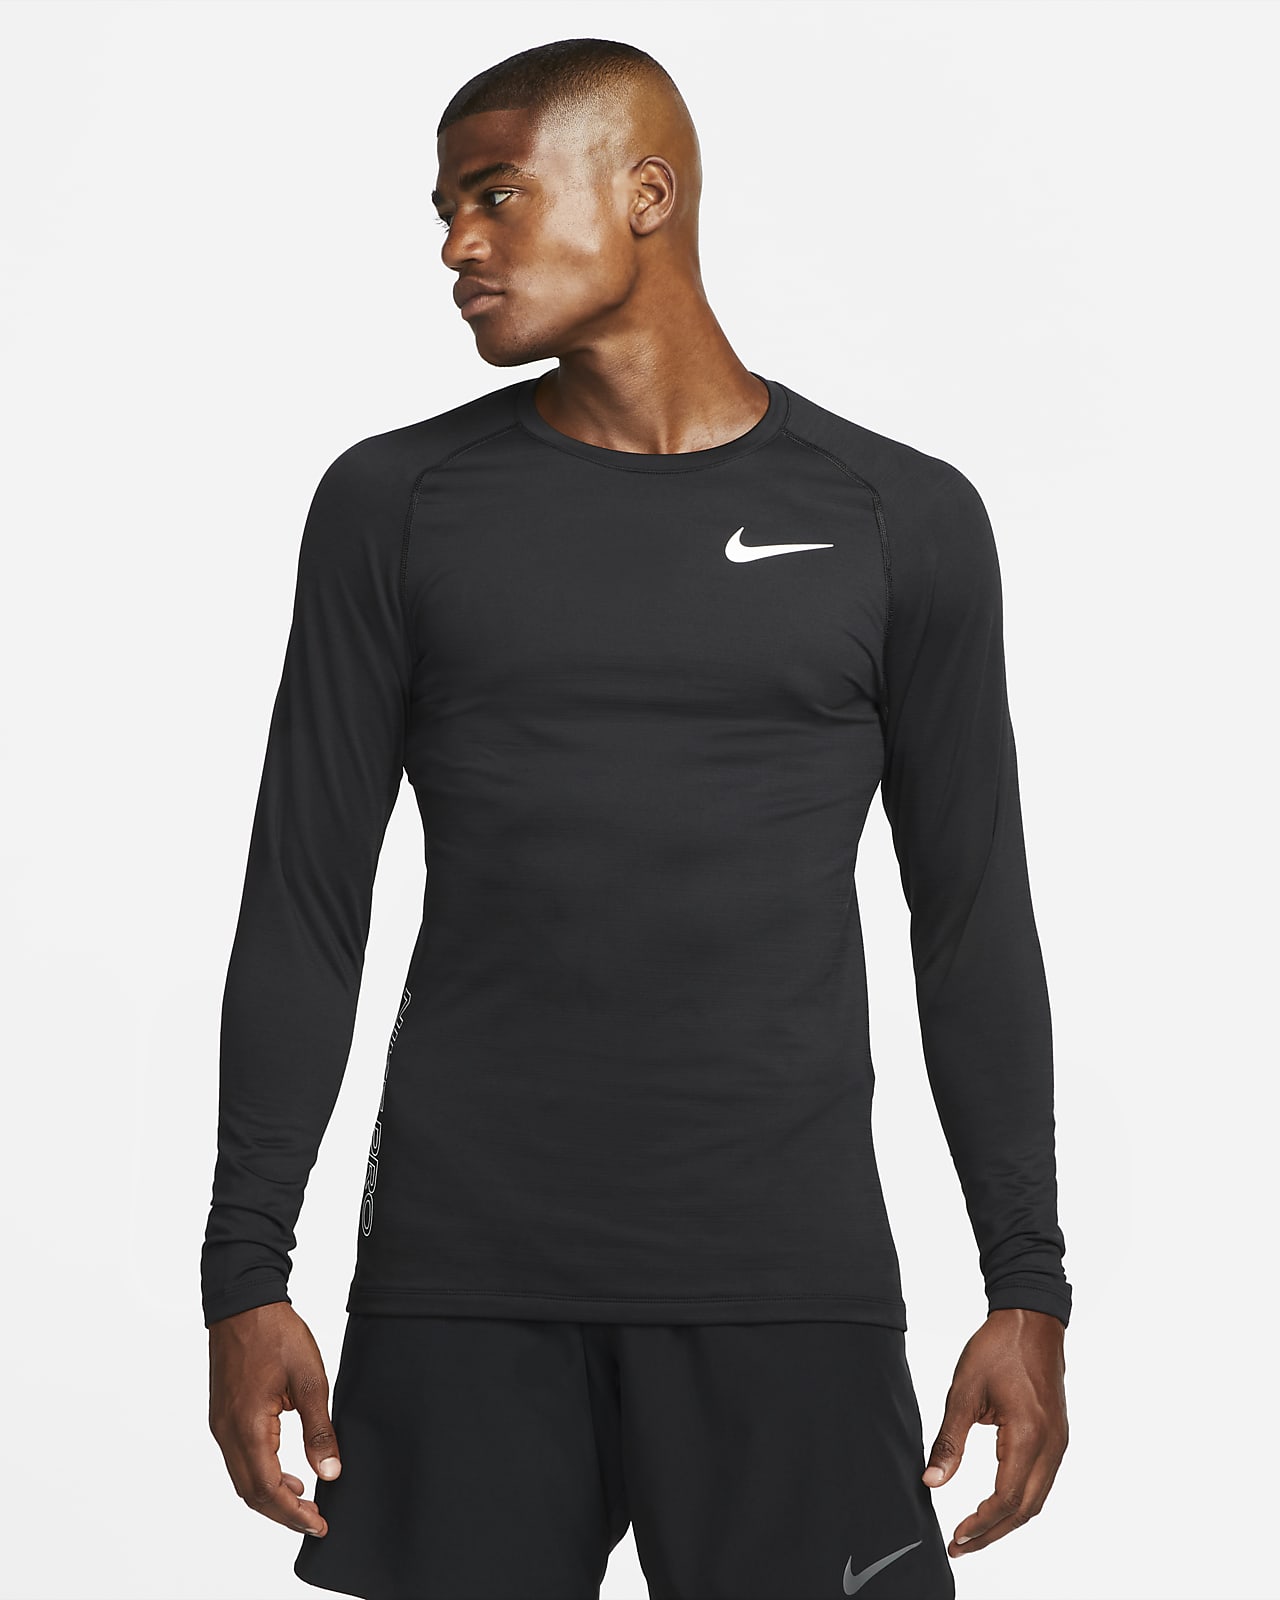 Långärmad tröja Nike Pro Crew för män